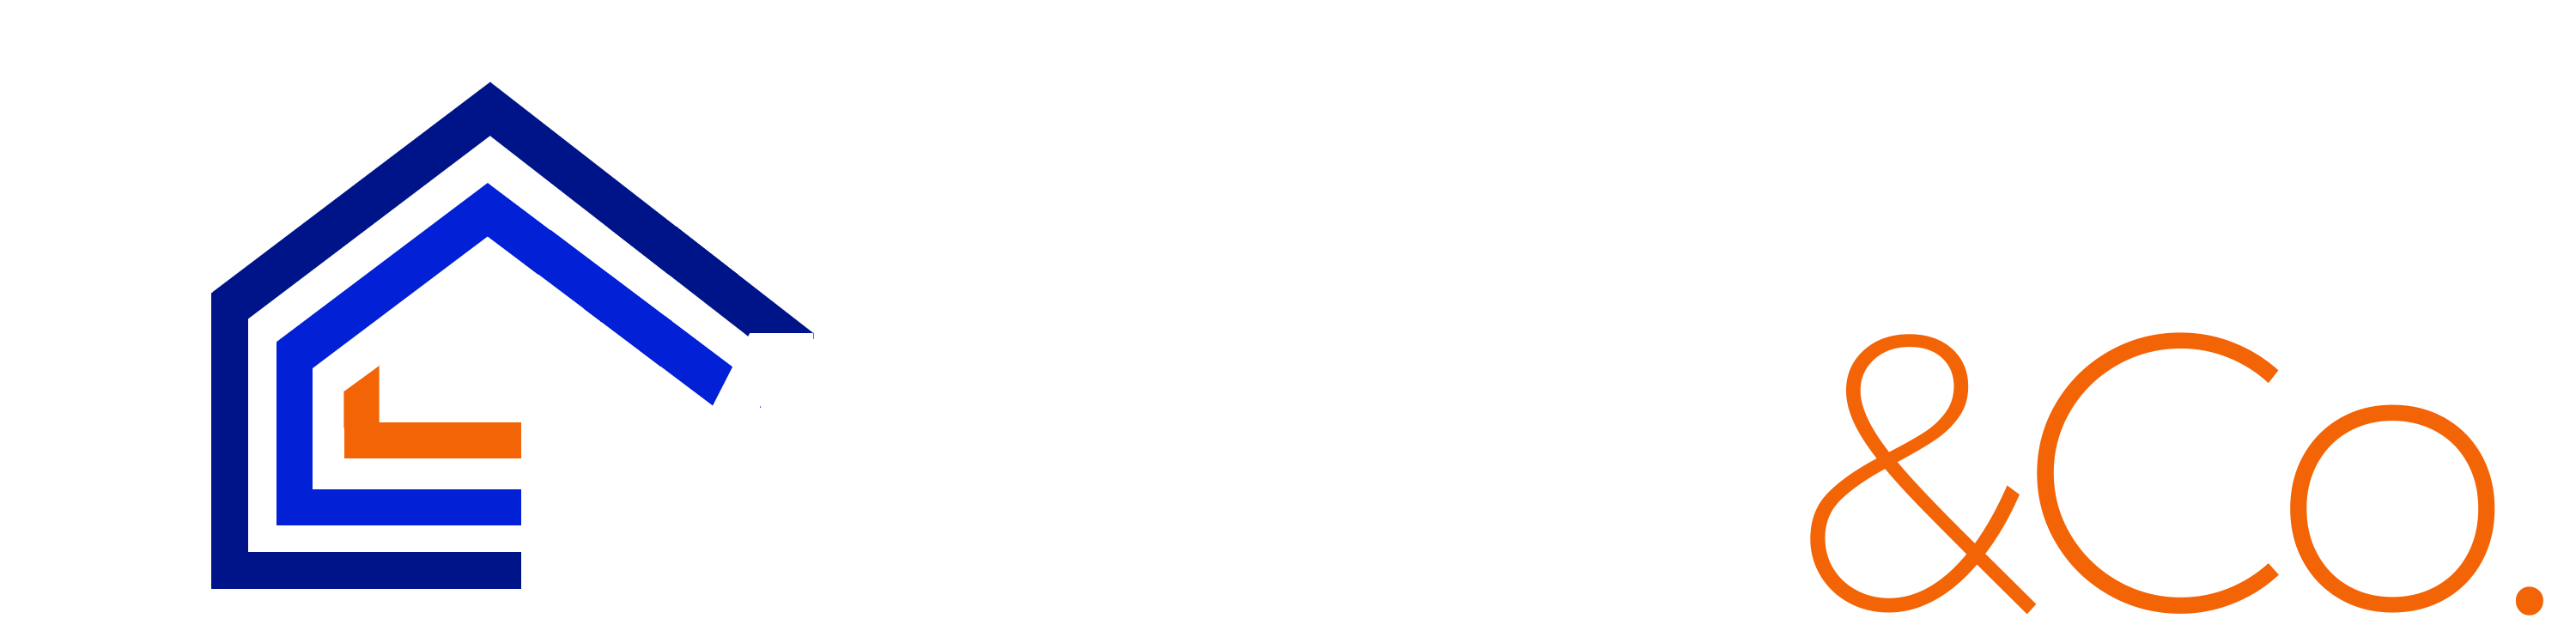 Myler & Co. logo